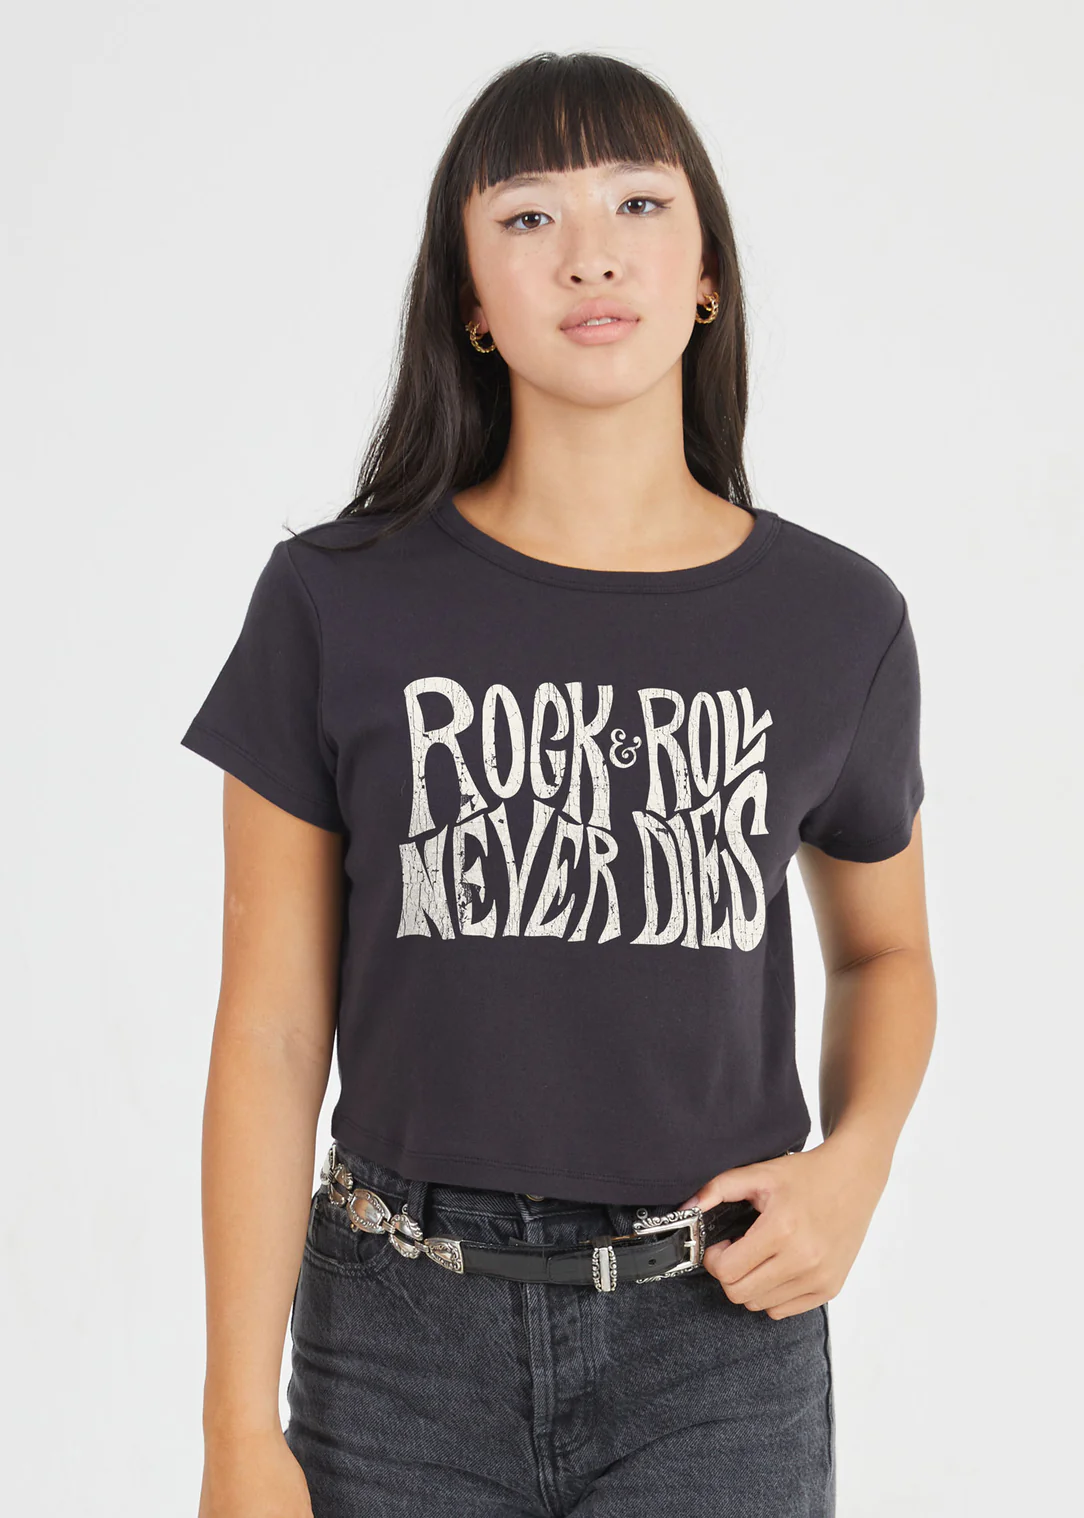 rock n roll never dies tee